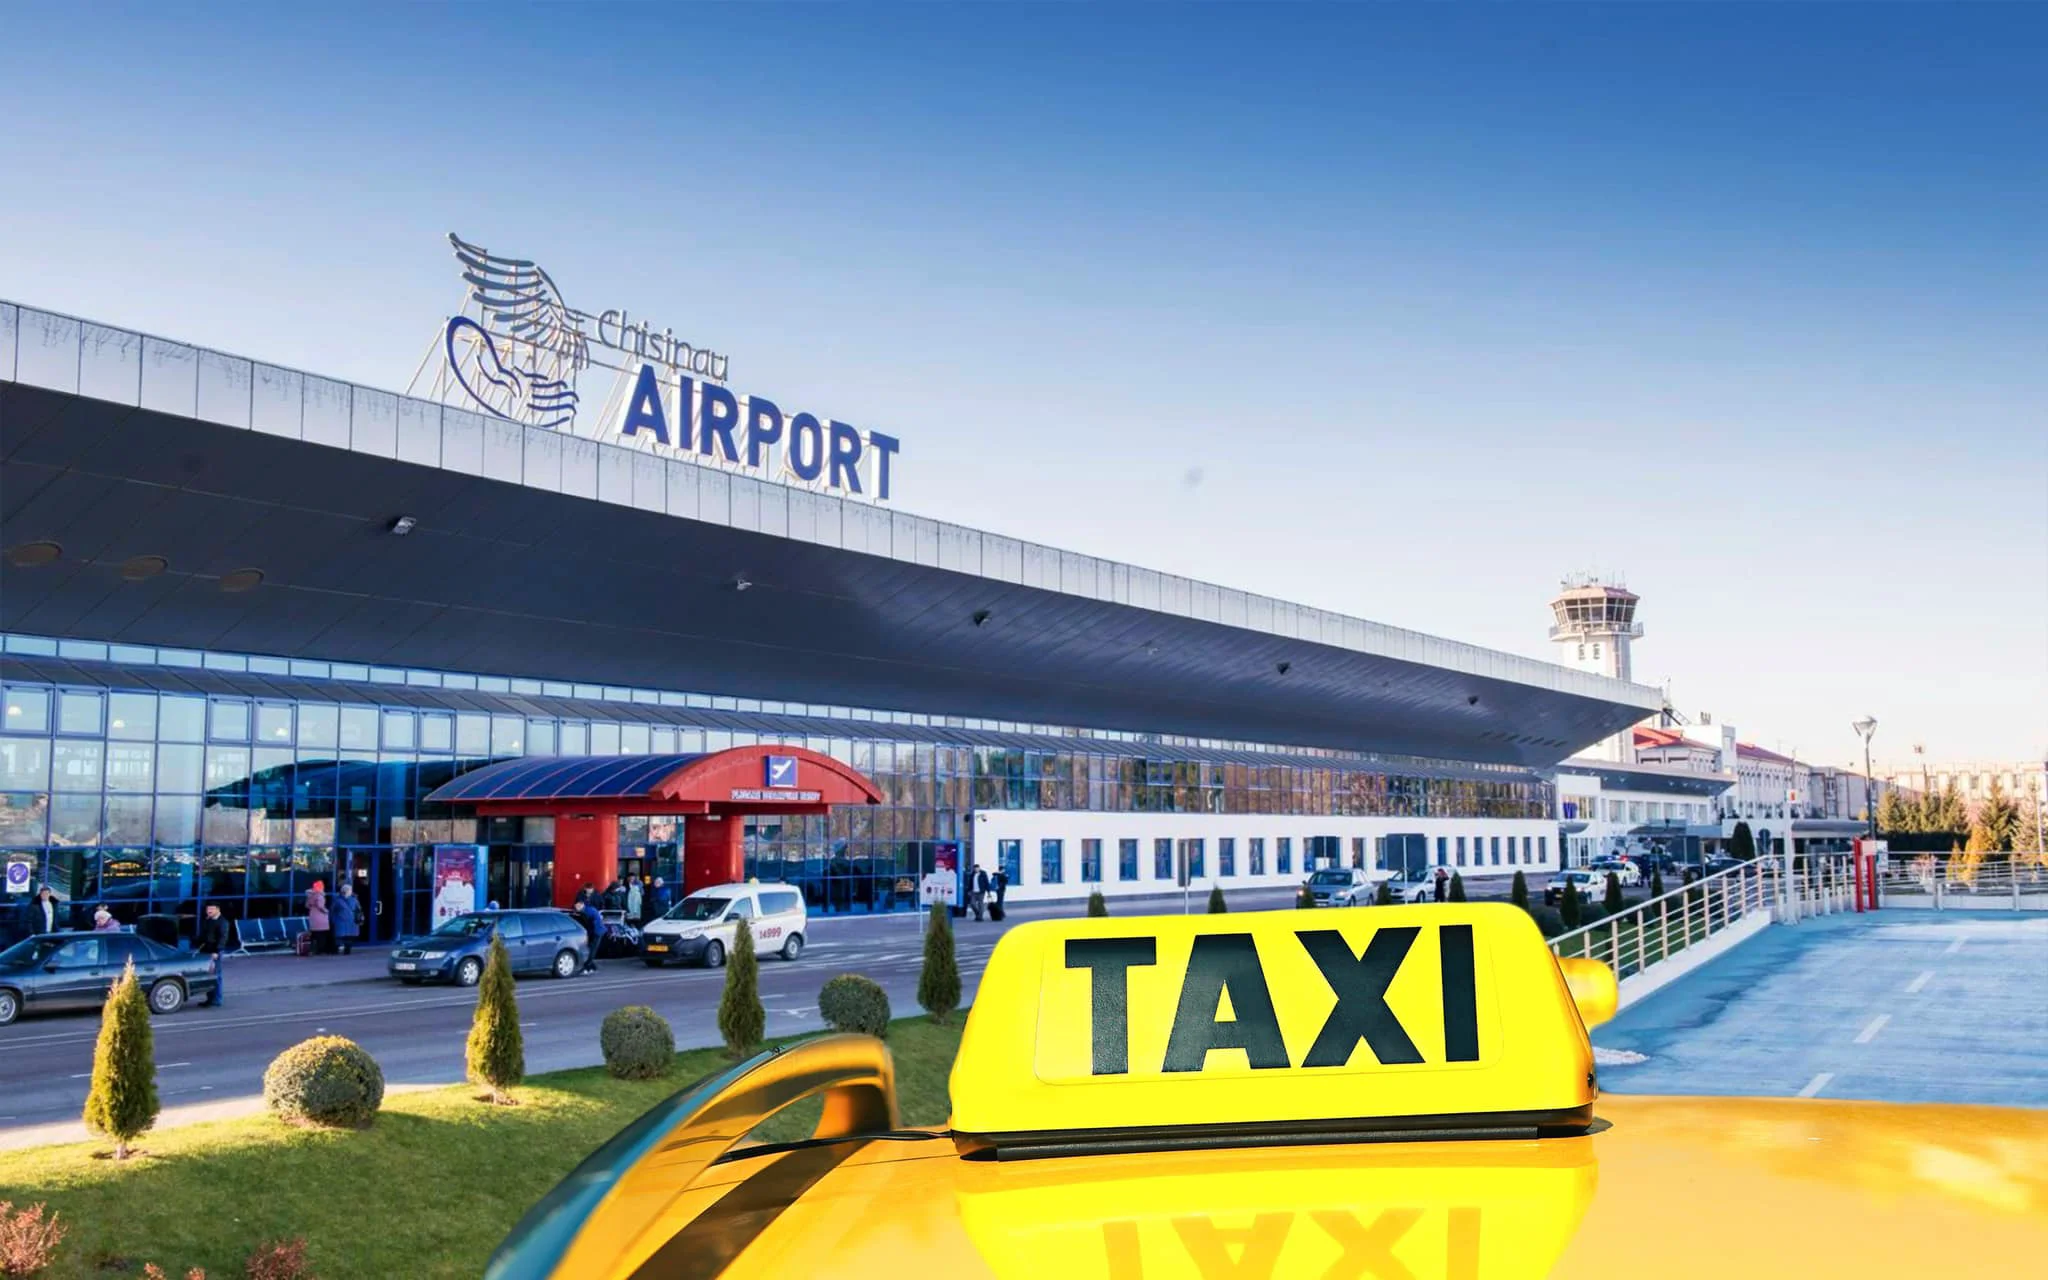 Aeroportul Chișinău, taxi